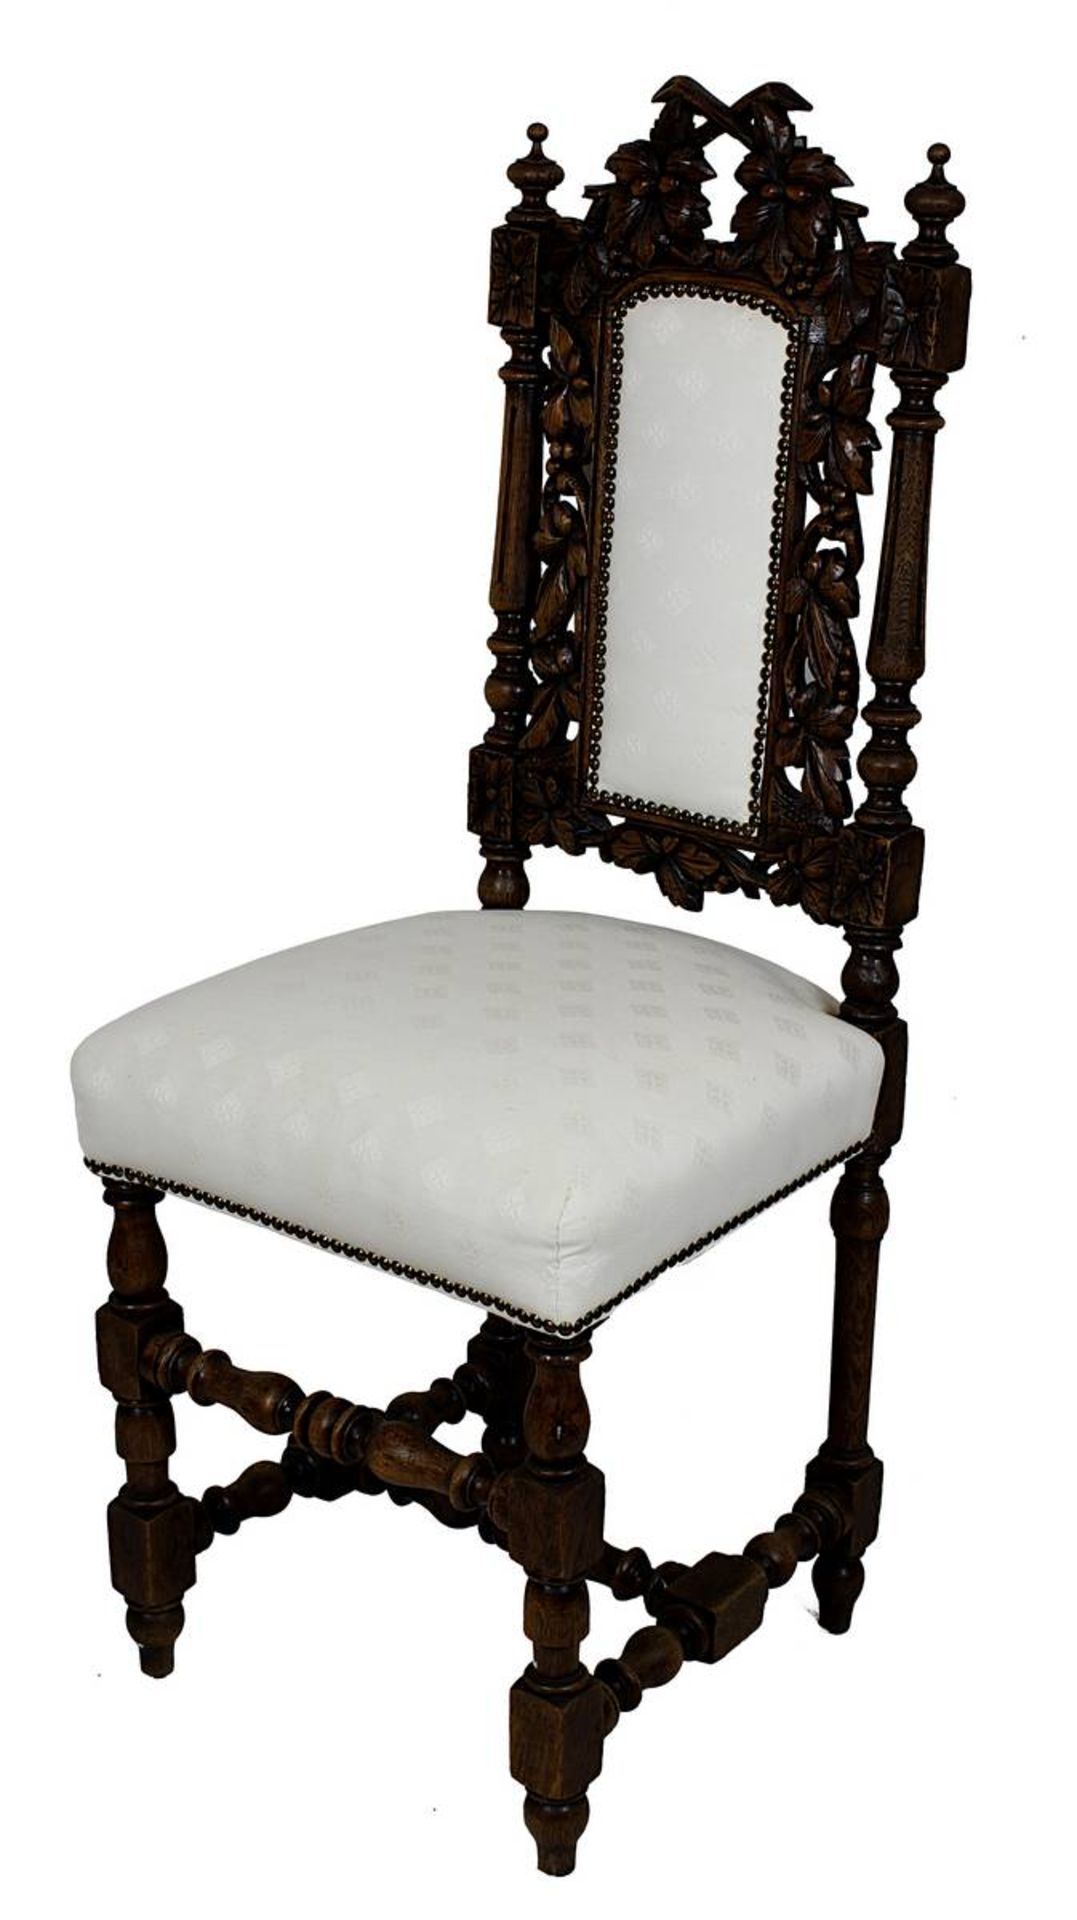 Sechs Stühle, Historismus um 1880, Eiche massiv, teils gedrechselt, teils beschnitzt, Lehnen mit - Image 2 of 2